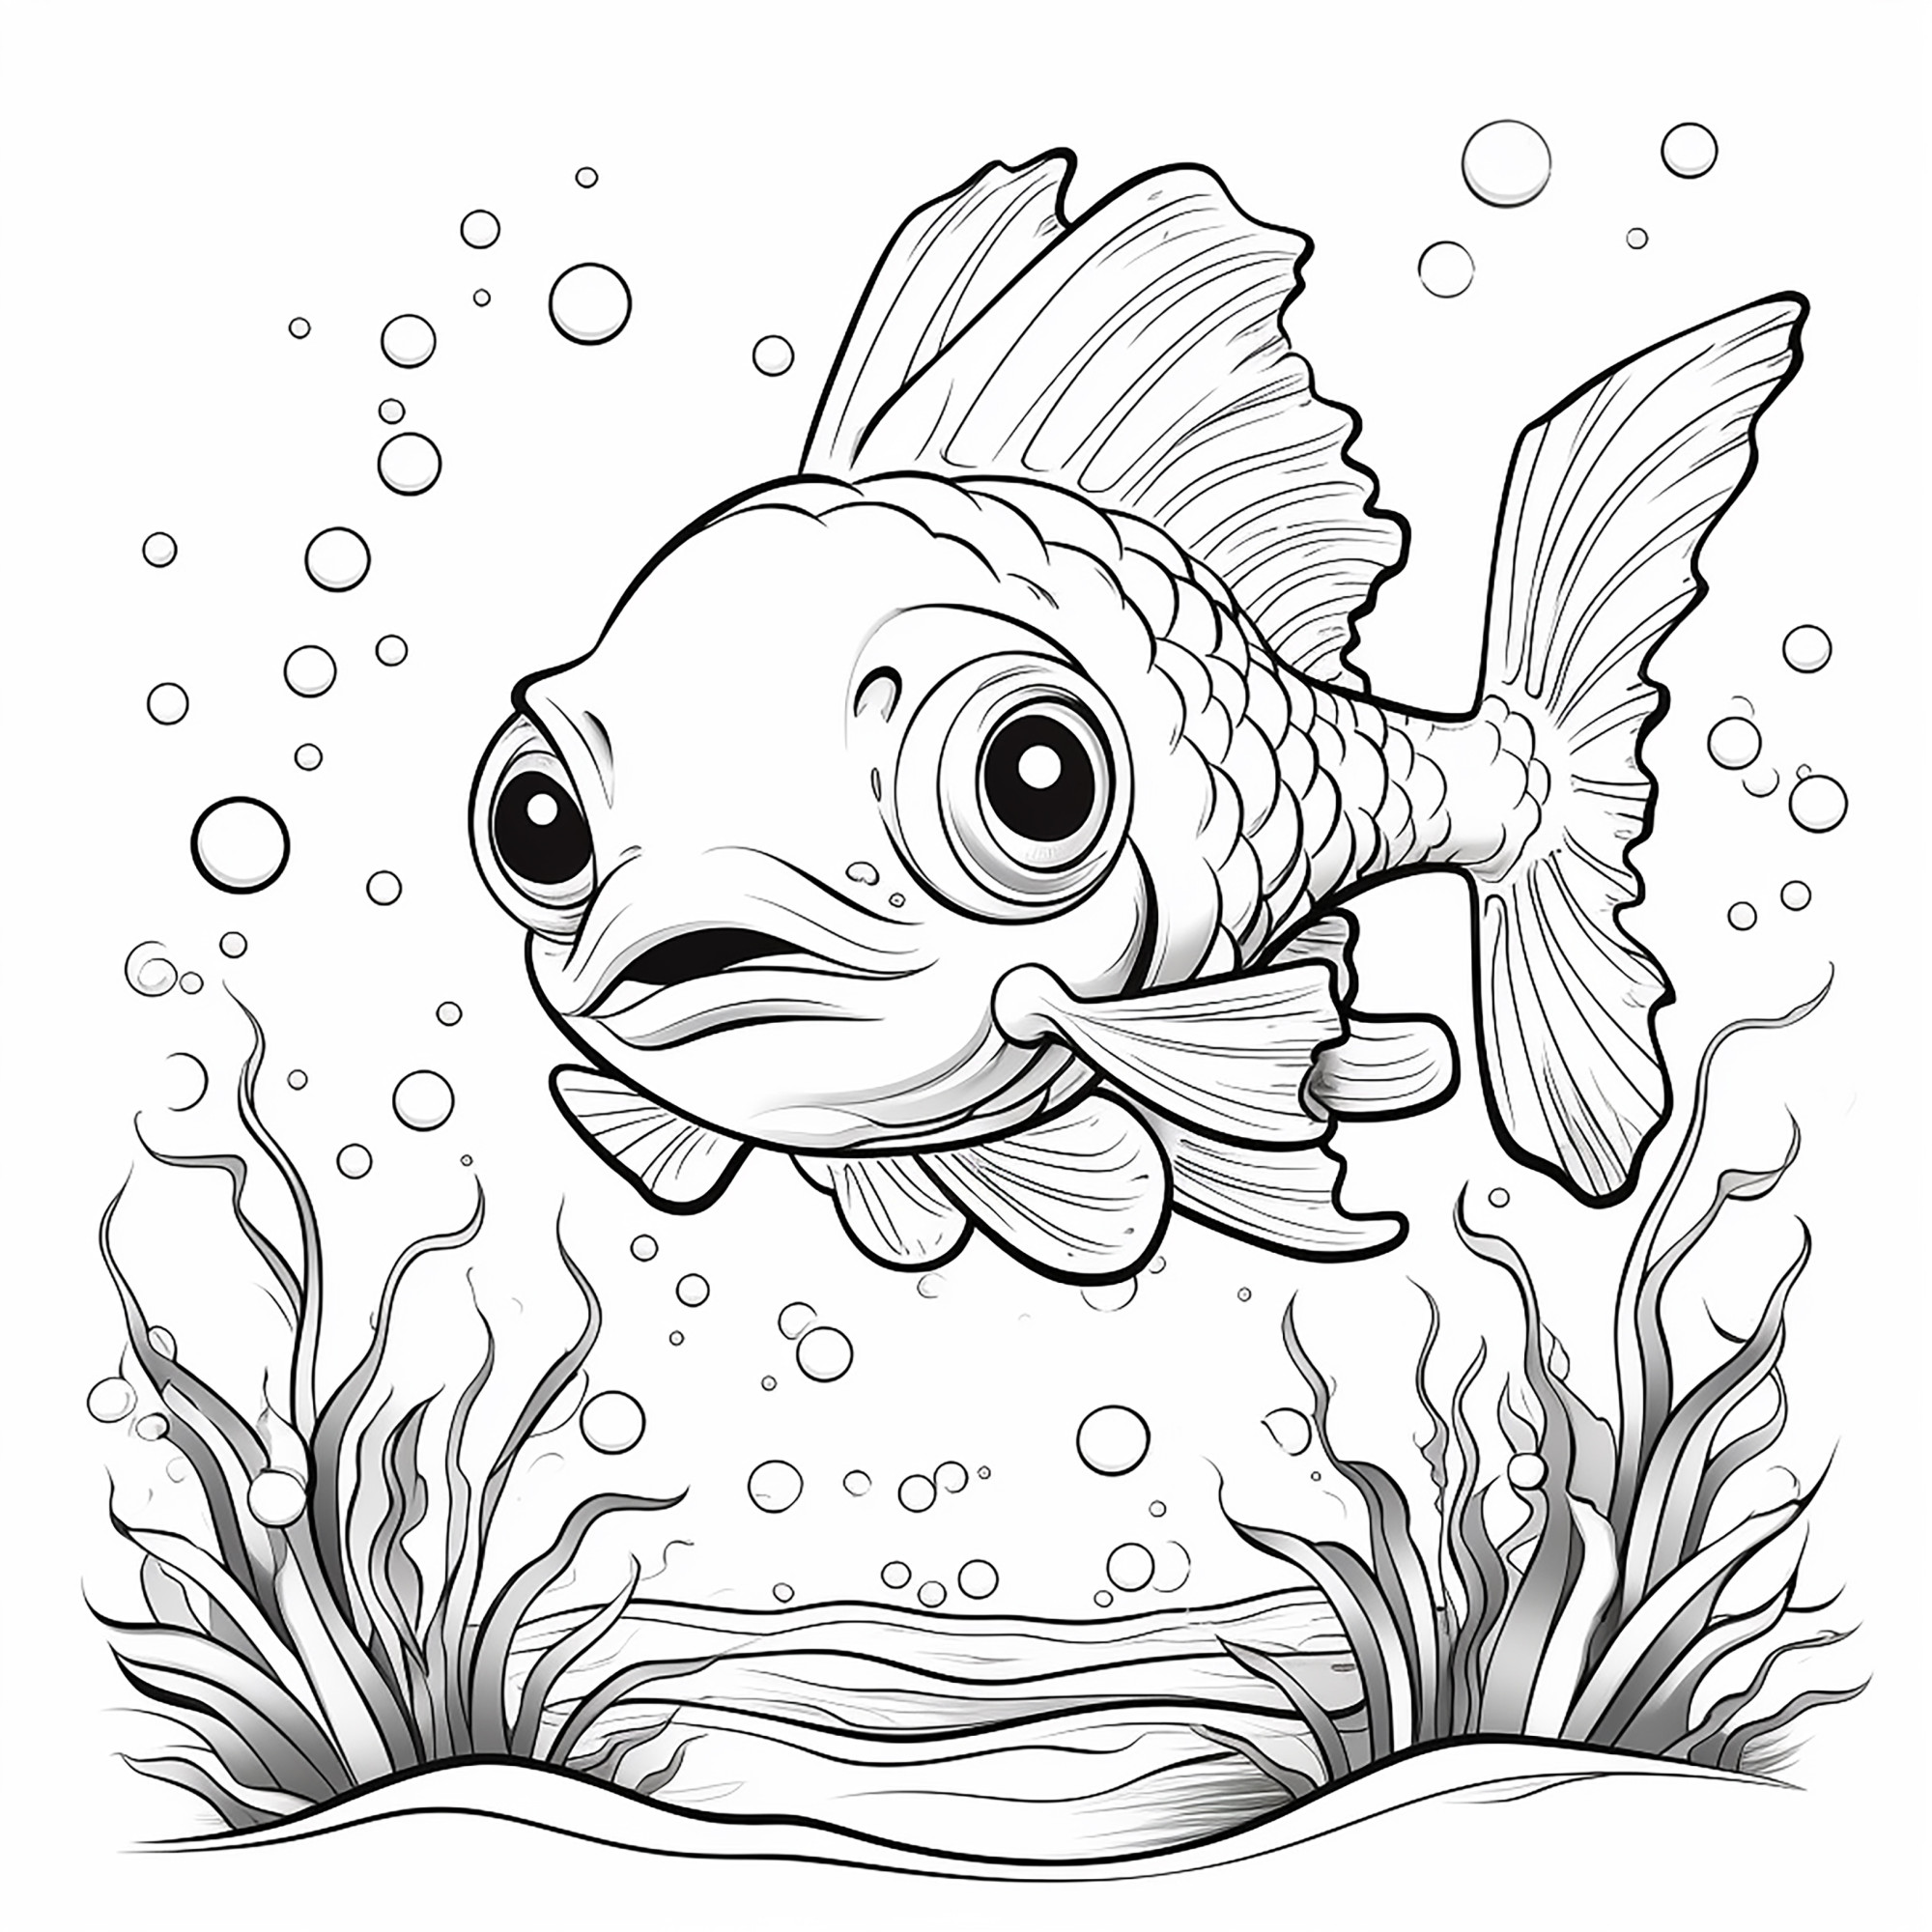 Раскраска для детей: рыба с выпученными глазами и большим плавником